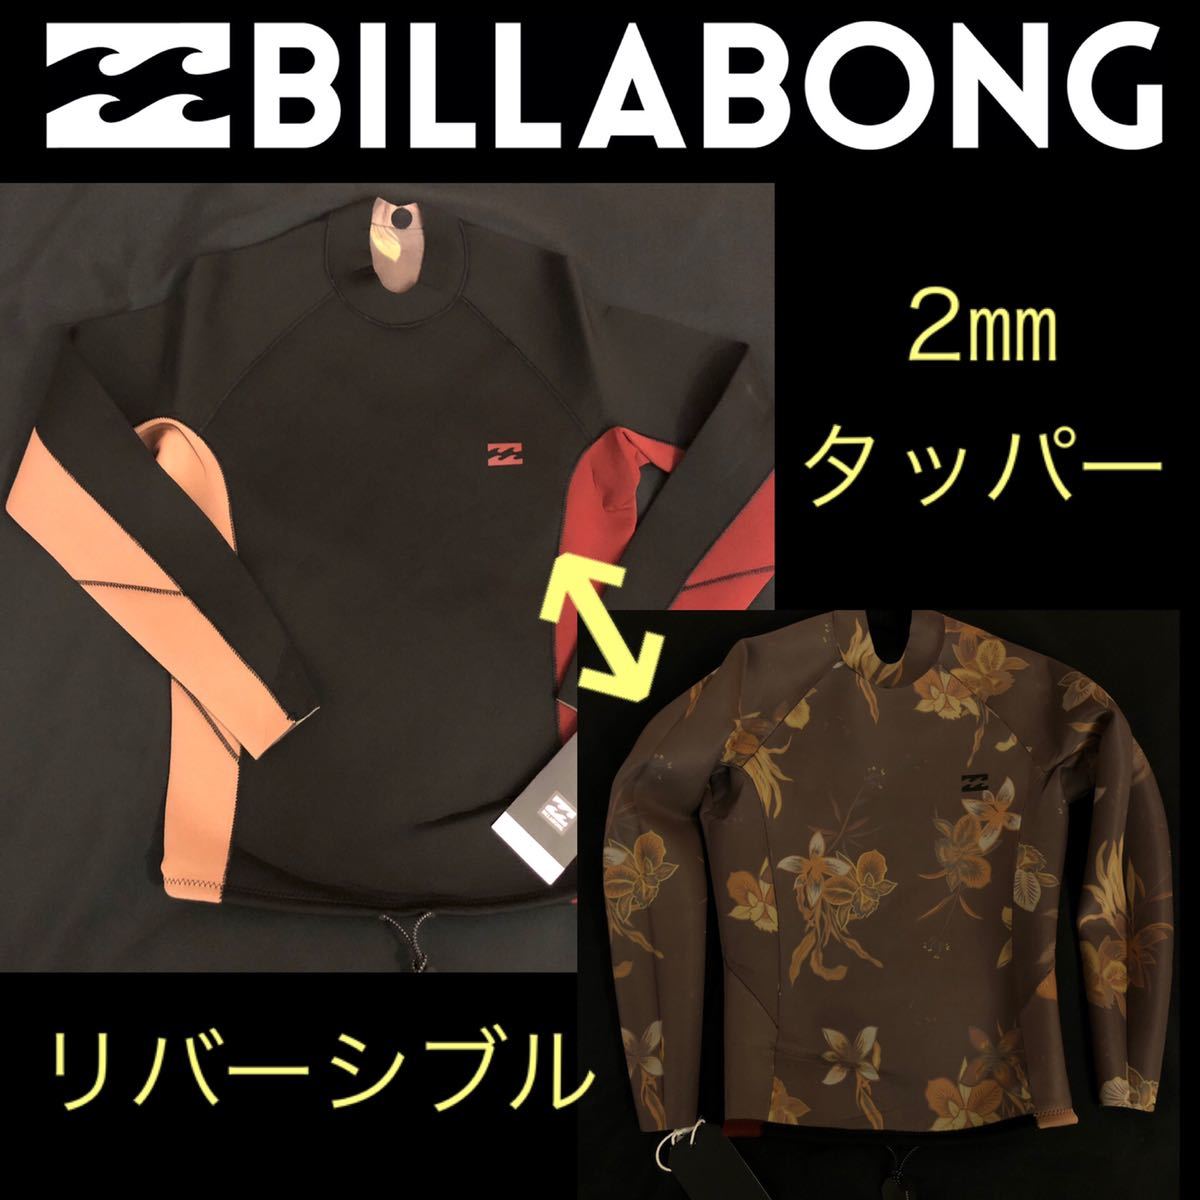 BILLABONG ビラボン メンズ 2㍉ タッパ タッパー ウェットスーツ ウエットスーツ Mサイズ